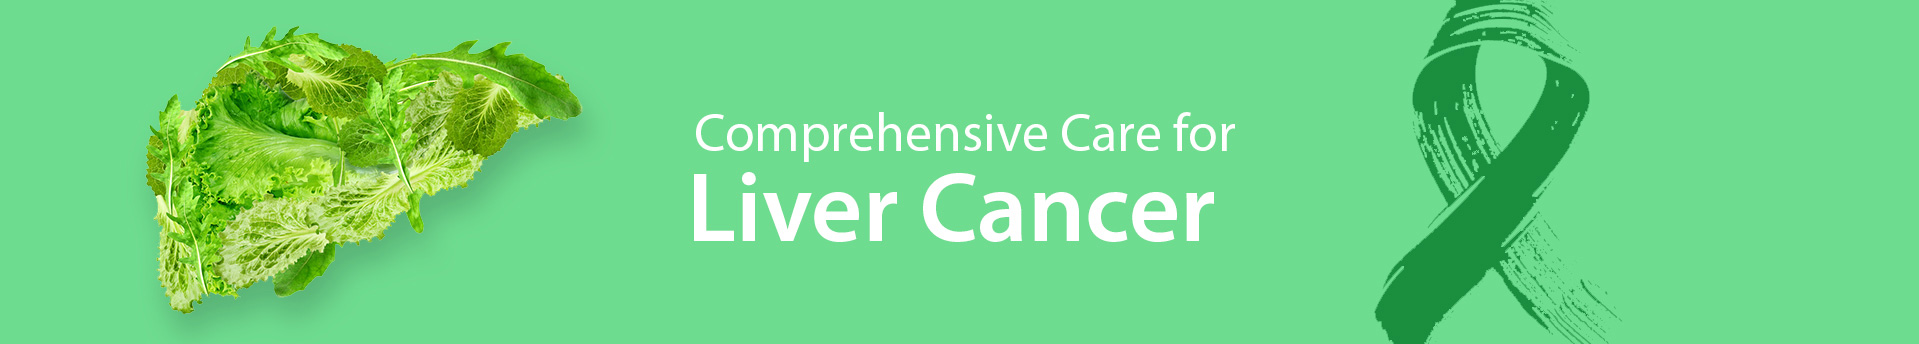 Medicaoncology liver Cancer